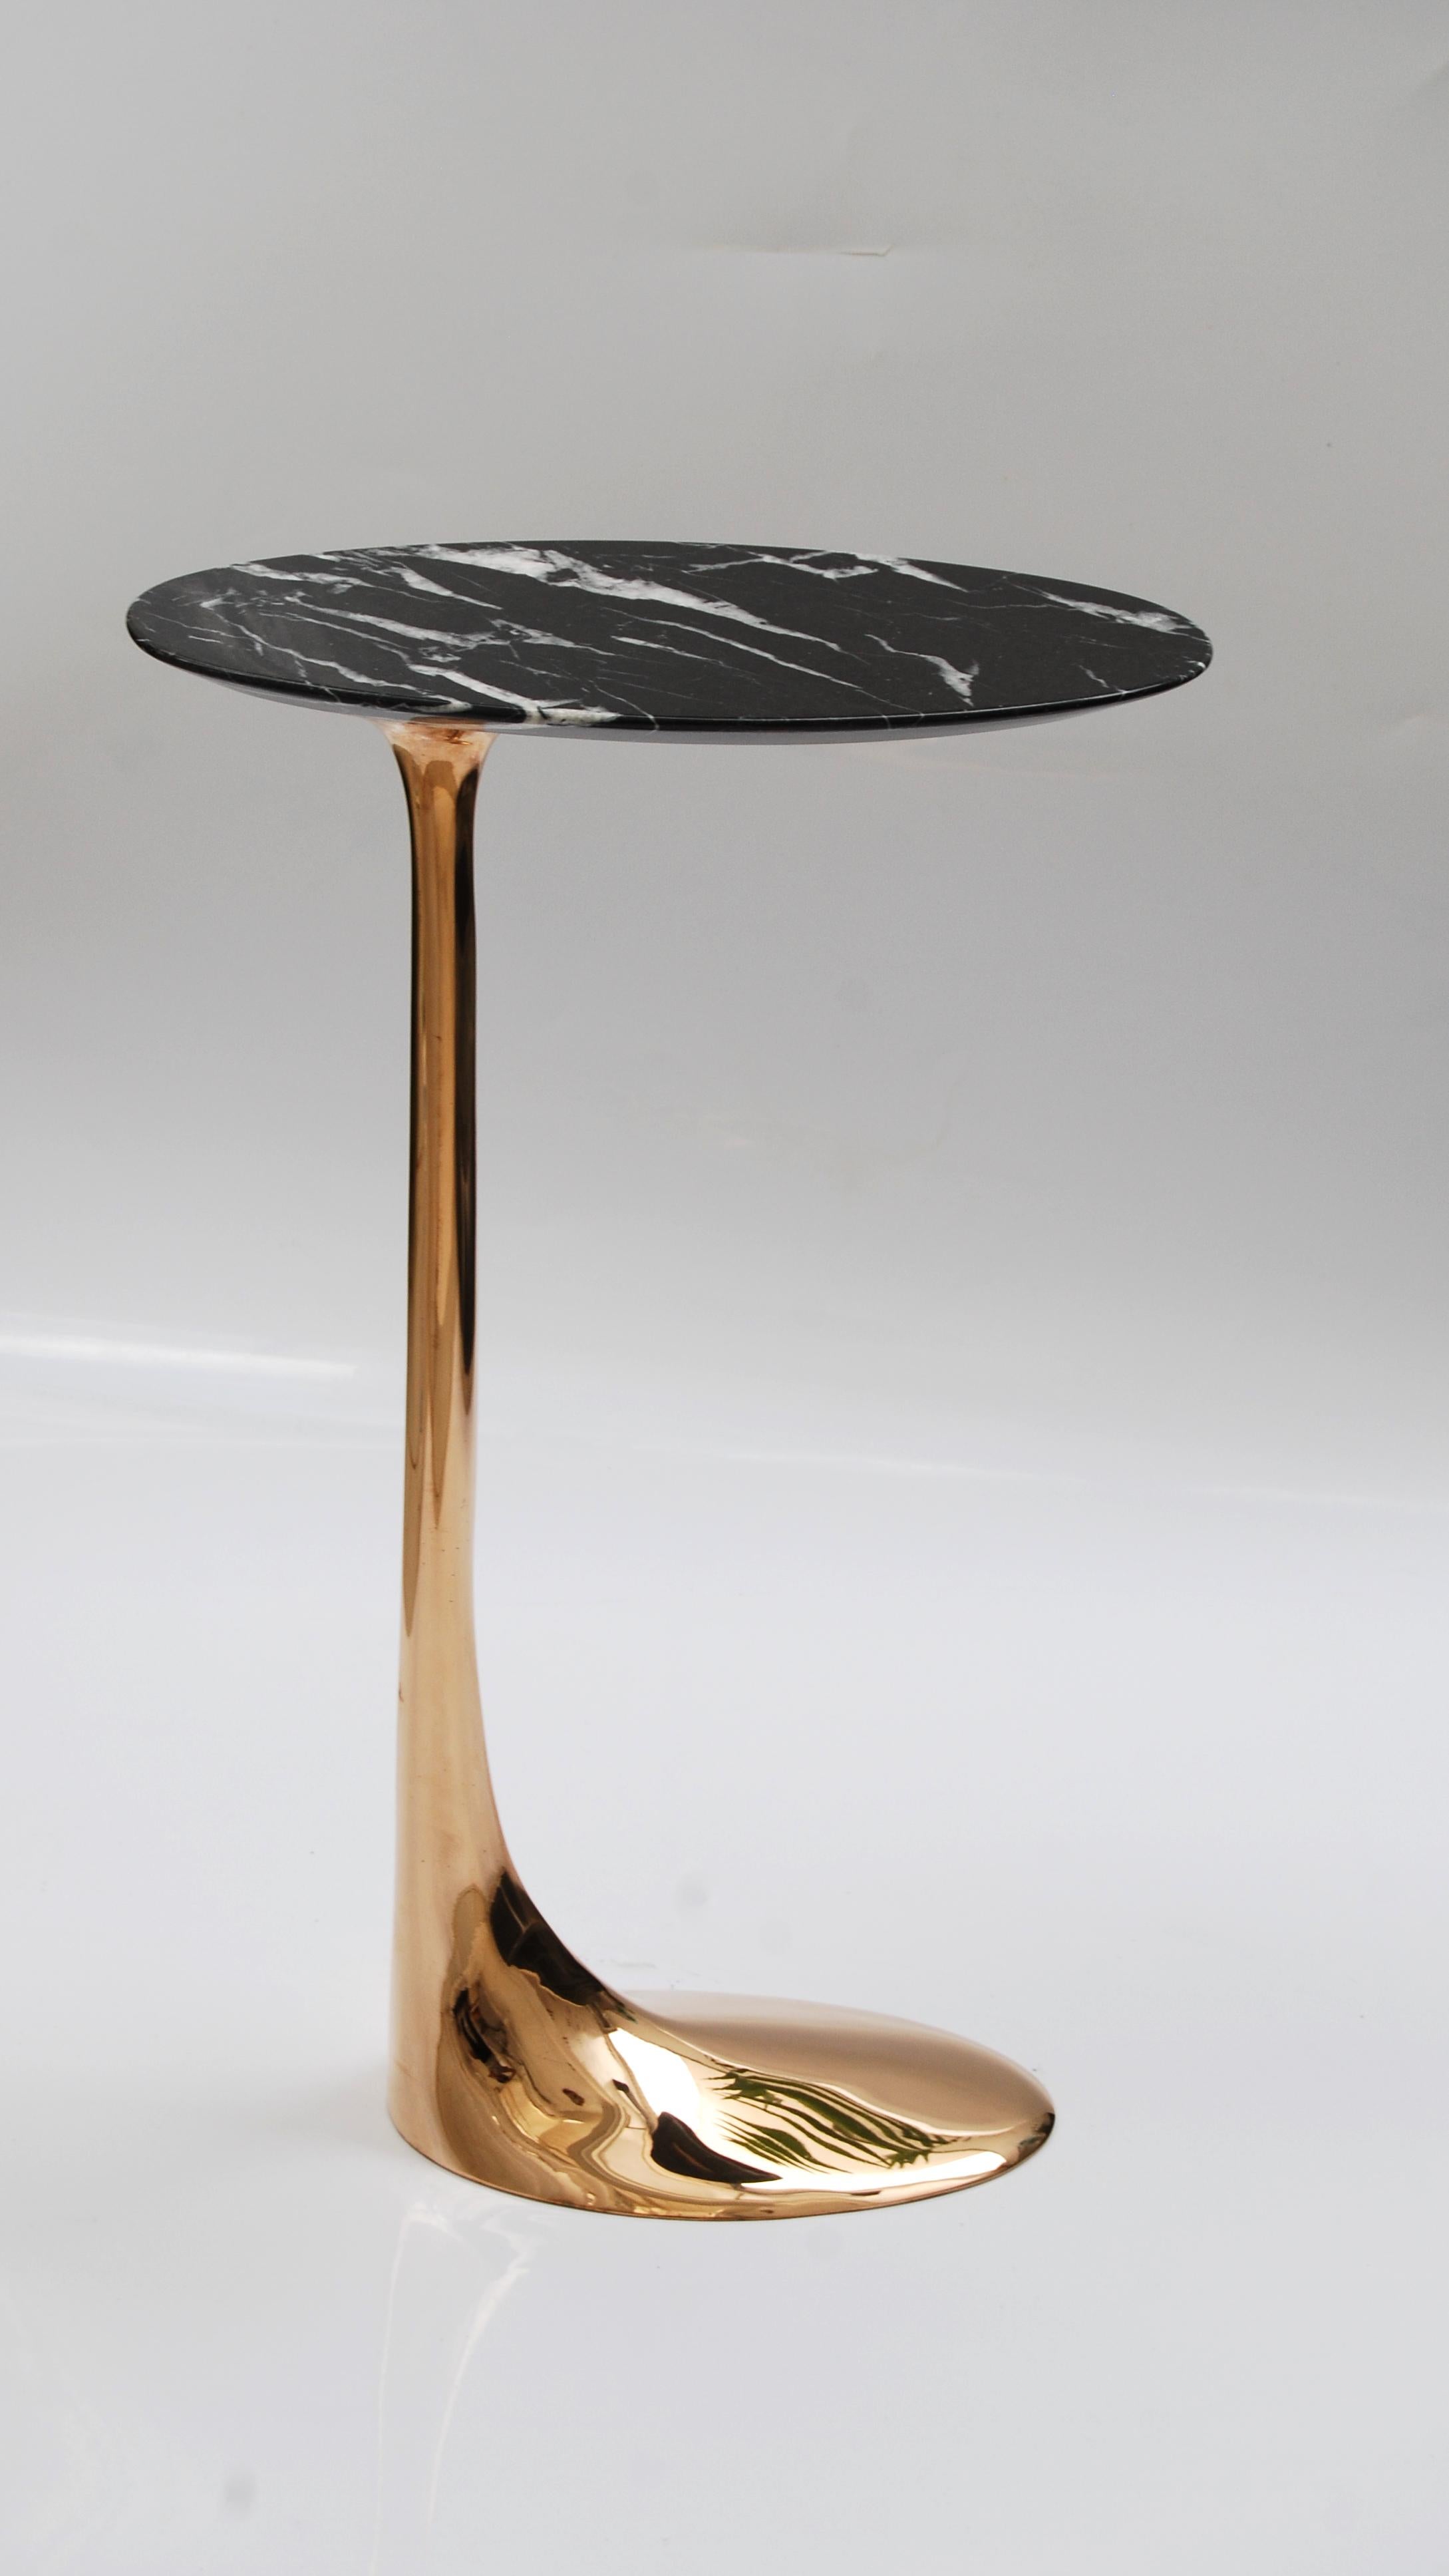 Table en bronze poli avec plateau en marbre Marquina par Fakasaka Design
Dimensions : L 18 x P 38 x H 62 cm
MATERIAL : Bronze poli, marbre Nero Marquina.

